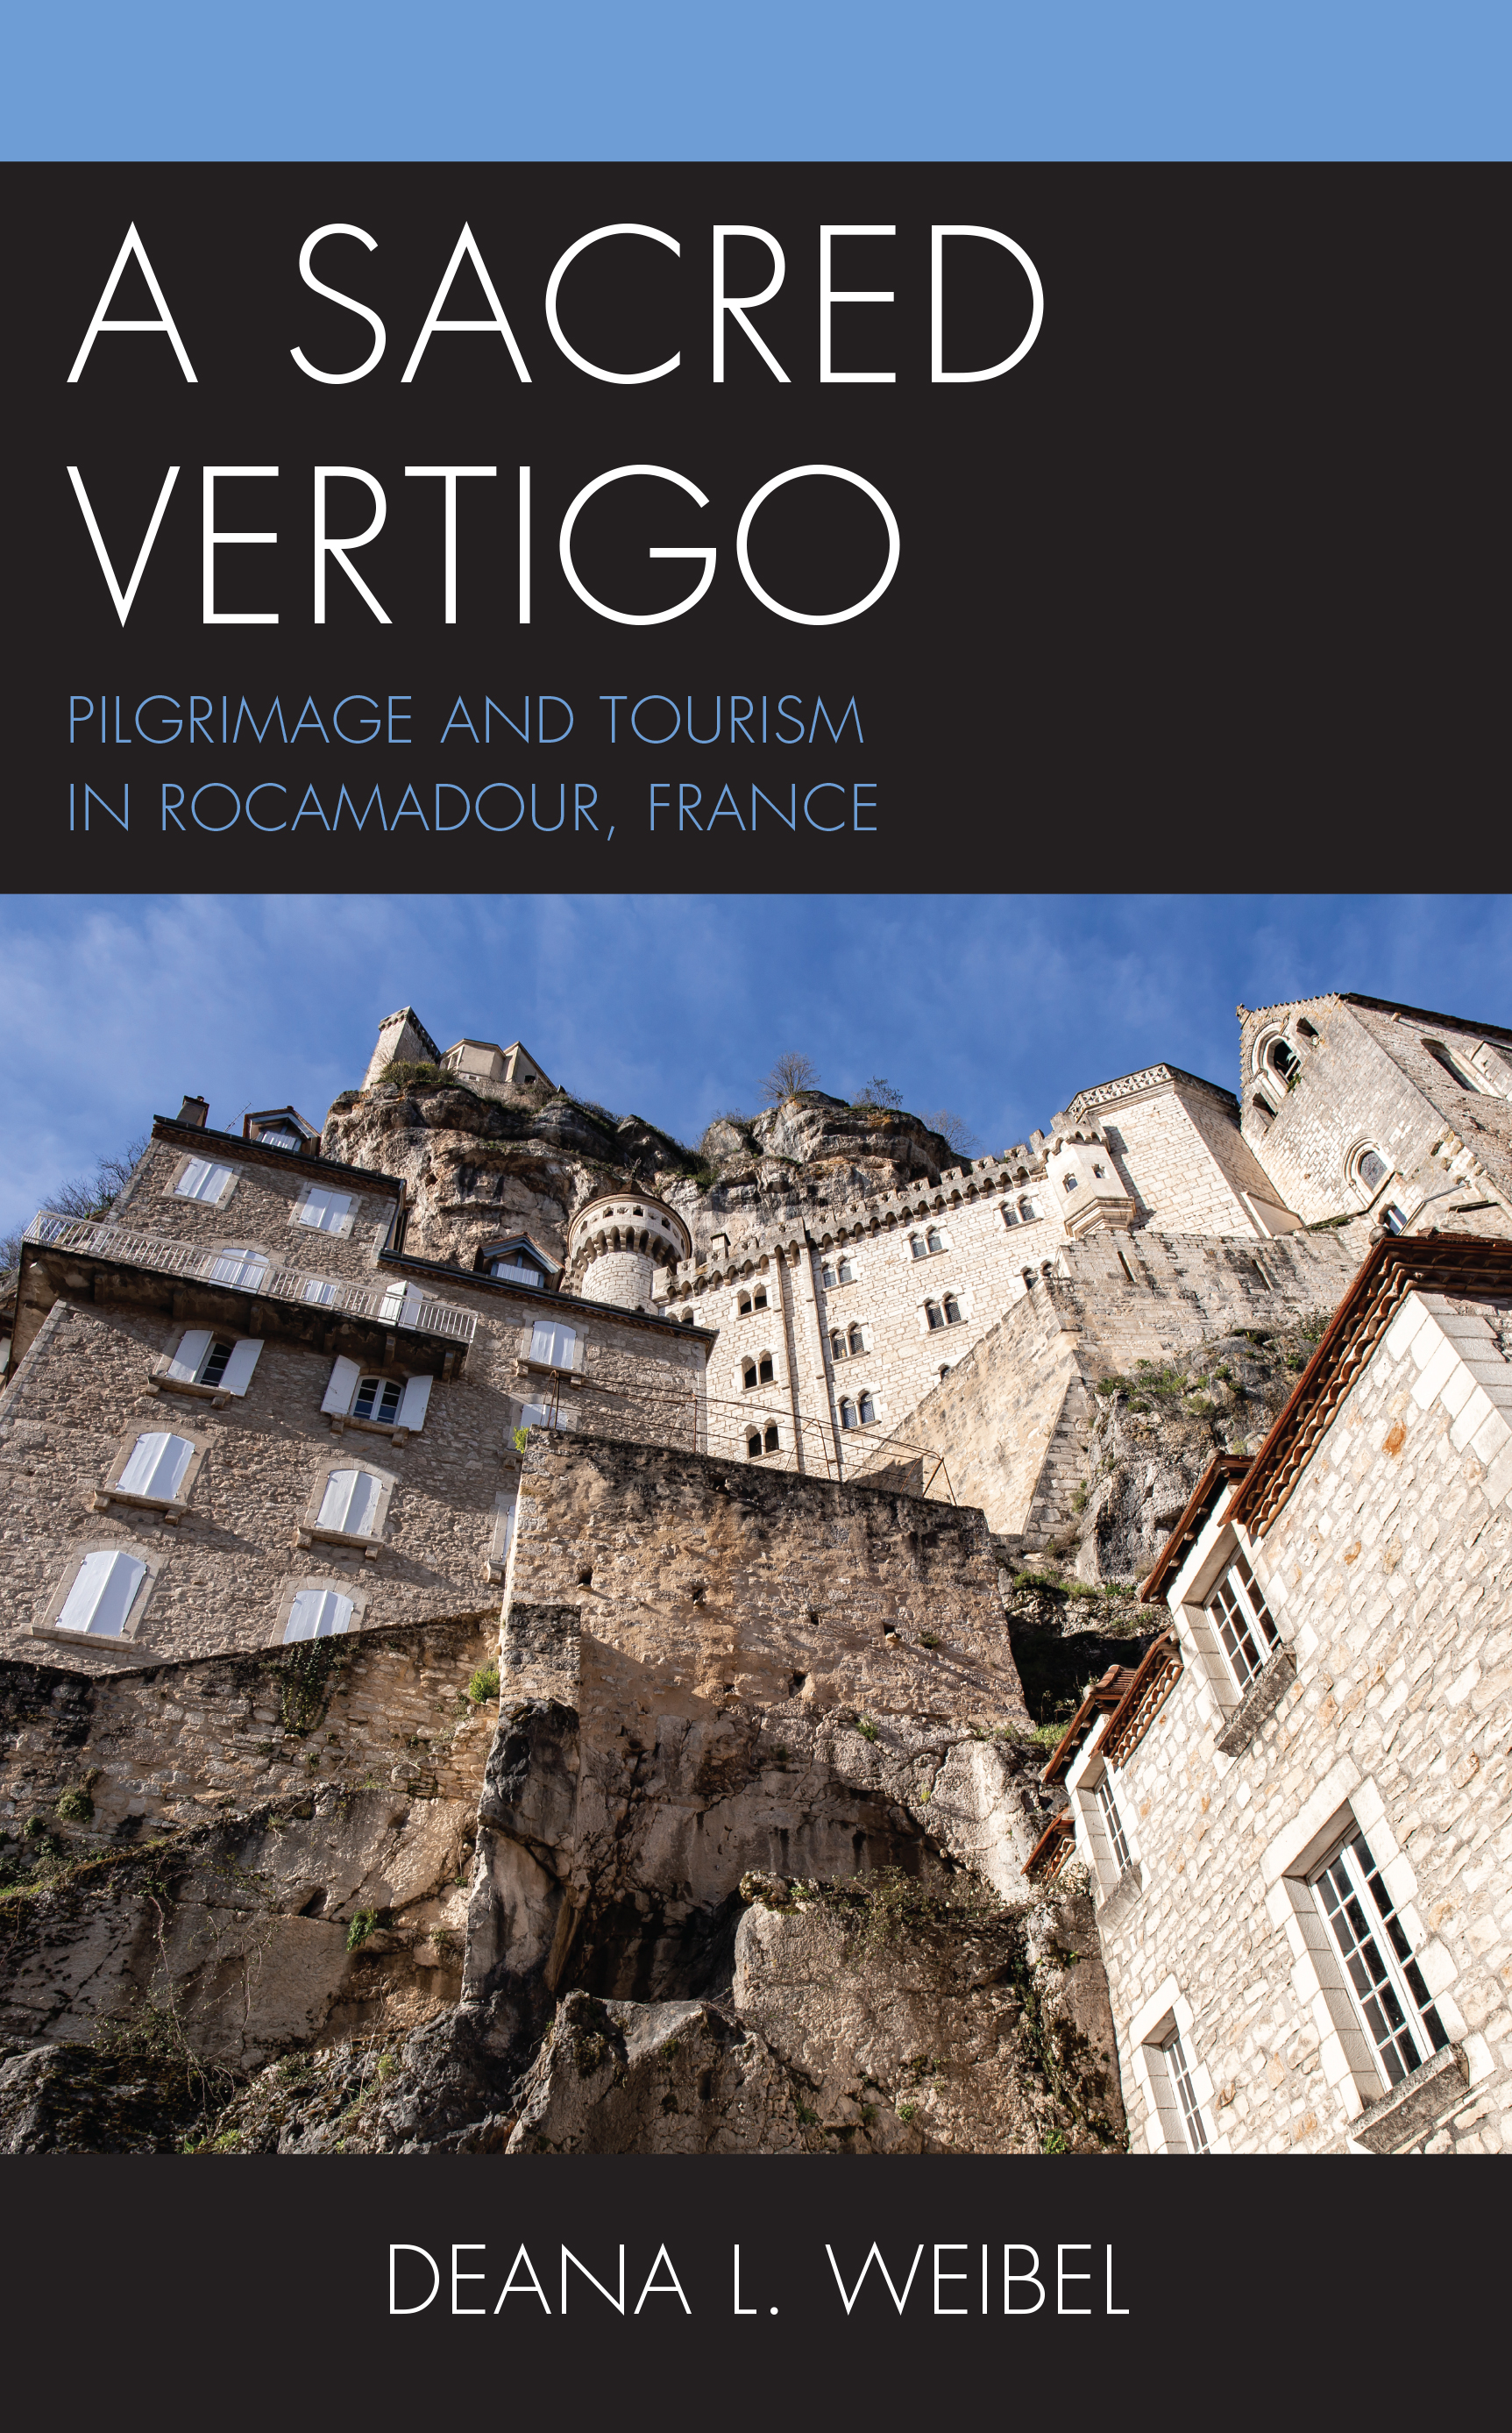 A Sacred Vertigo: Pilgrimage and Tourism in Rocamadour, France